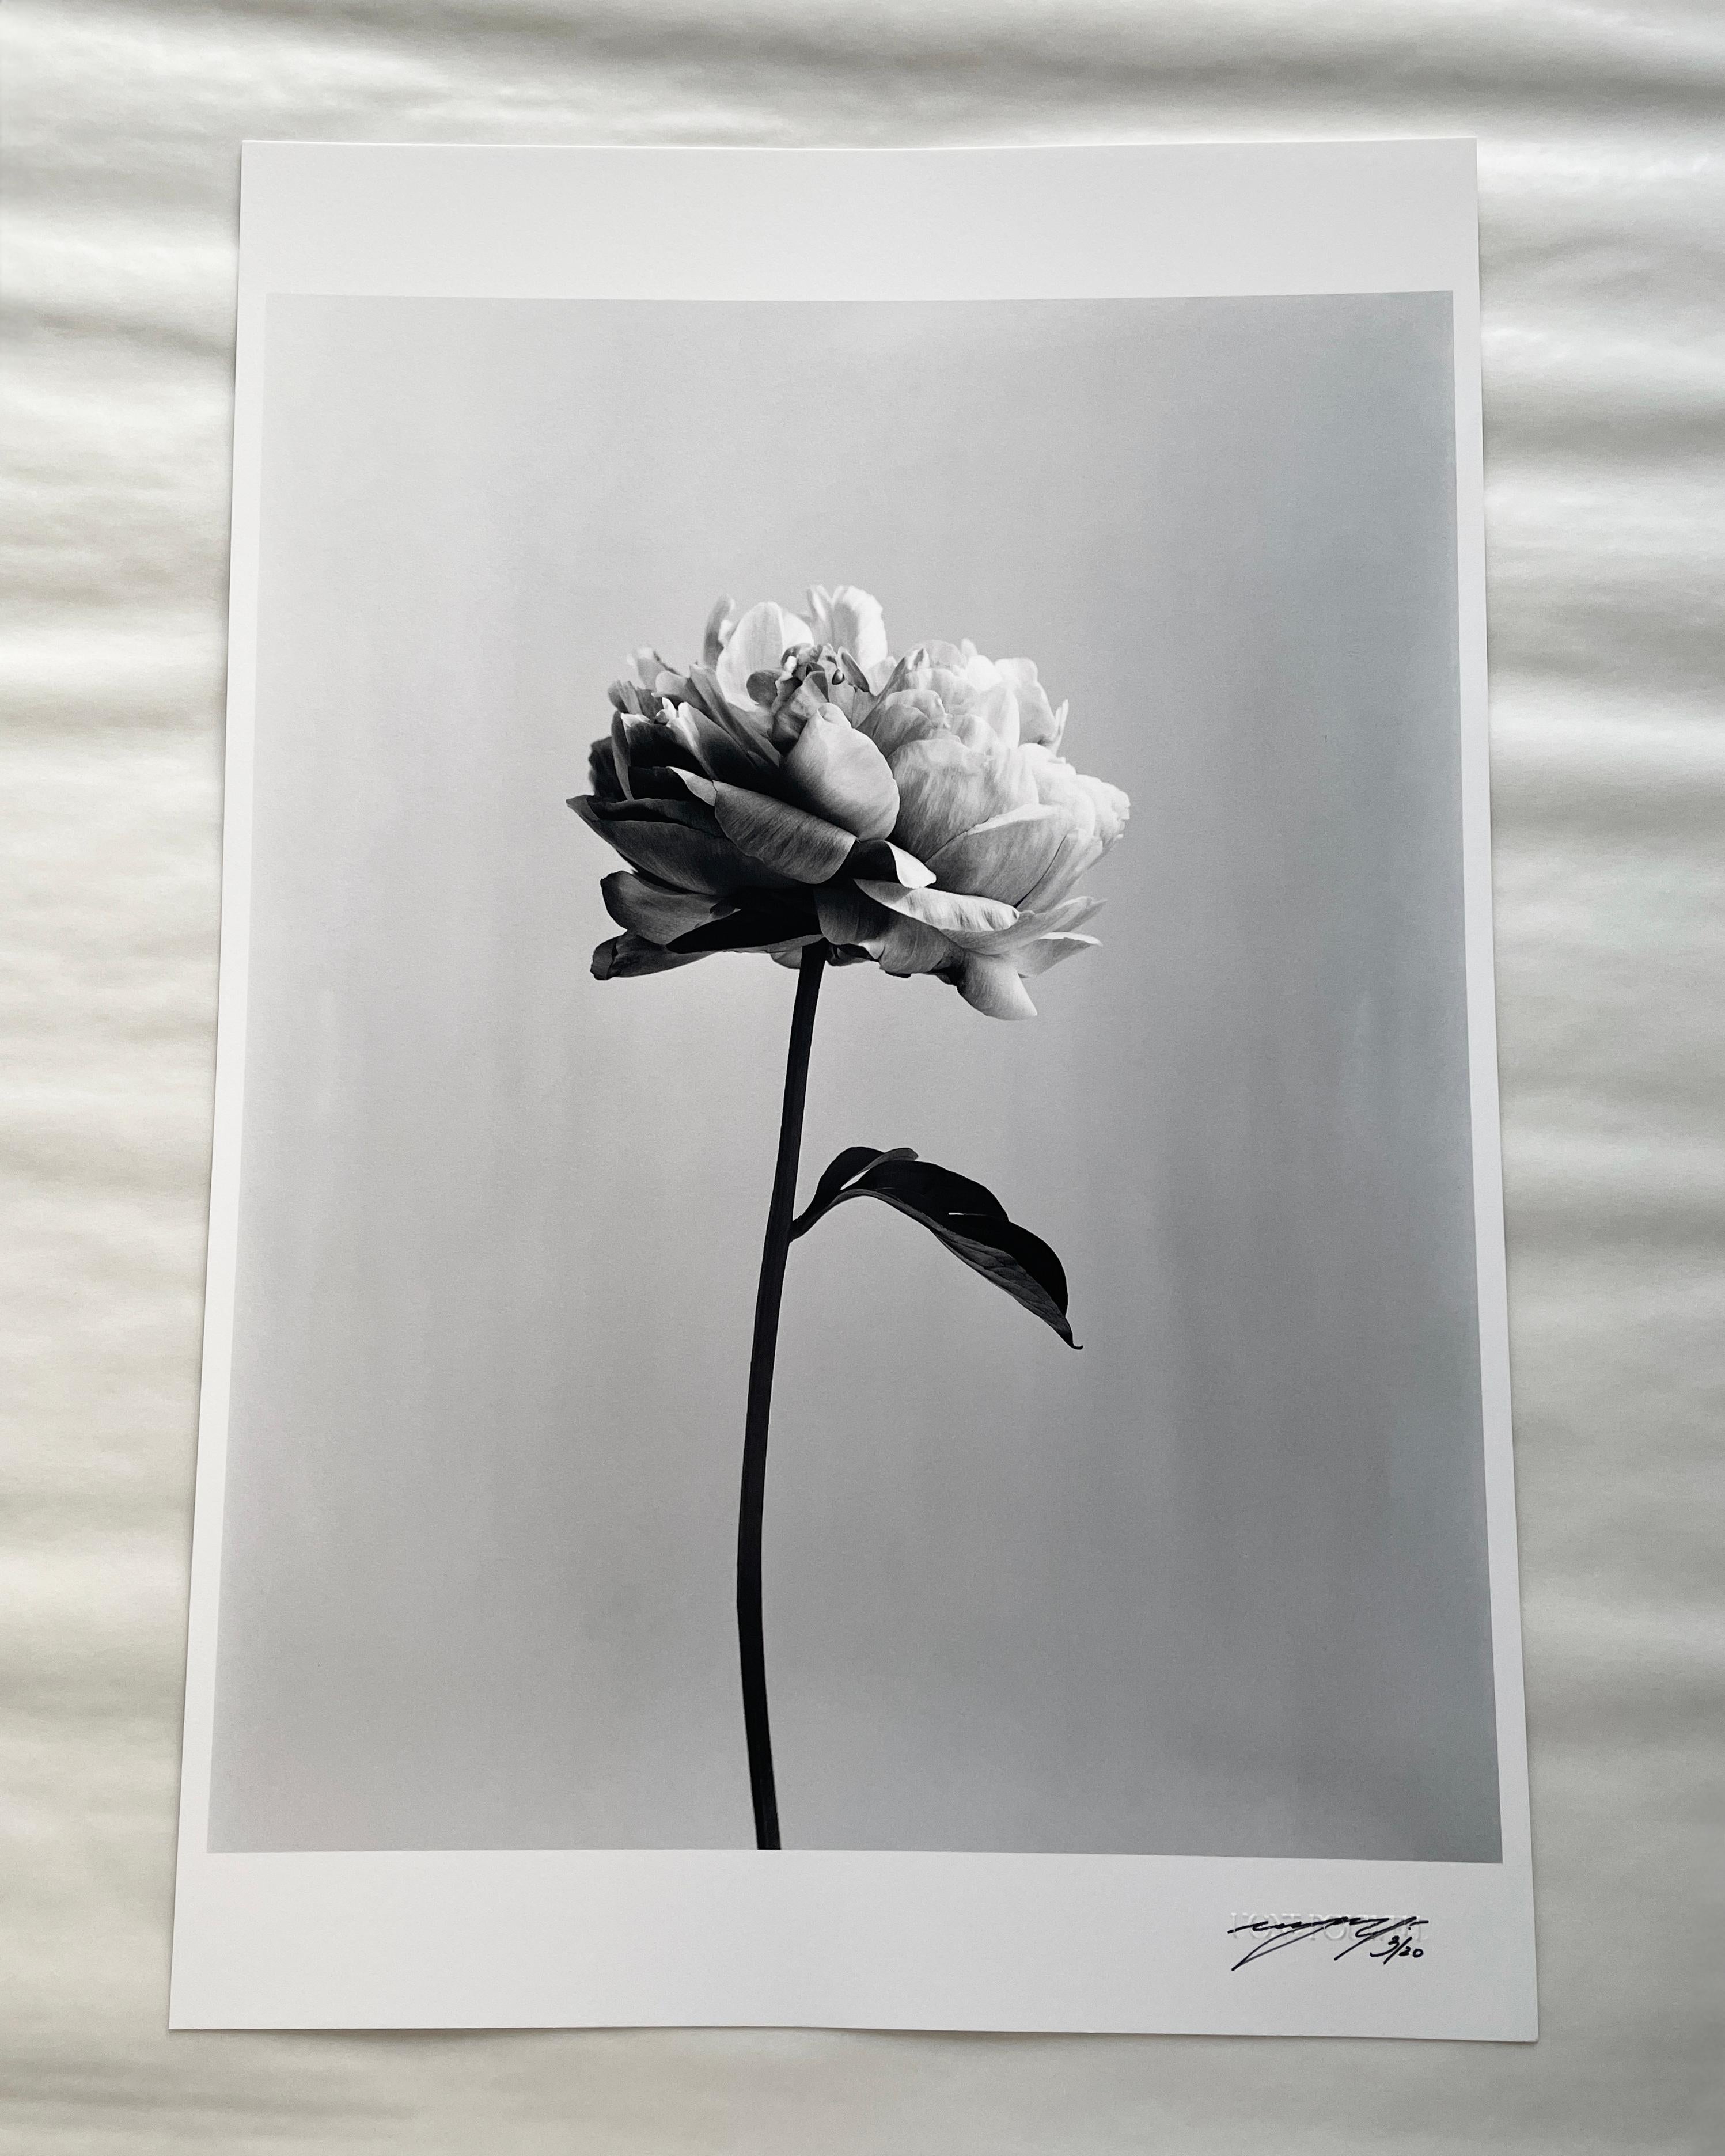 Pivoine n°3 - photographie florale analogique en noir et blanc, édition limitée à 20 exemplaires - Photograph de Ugne Pouwell